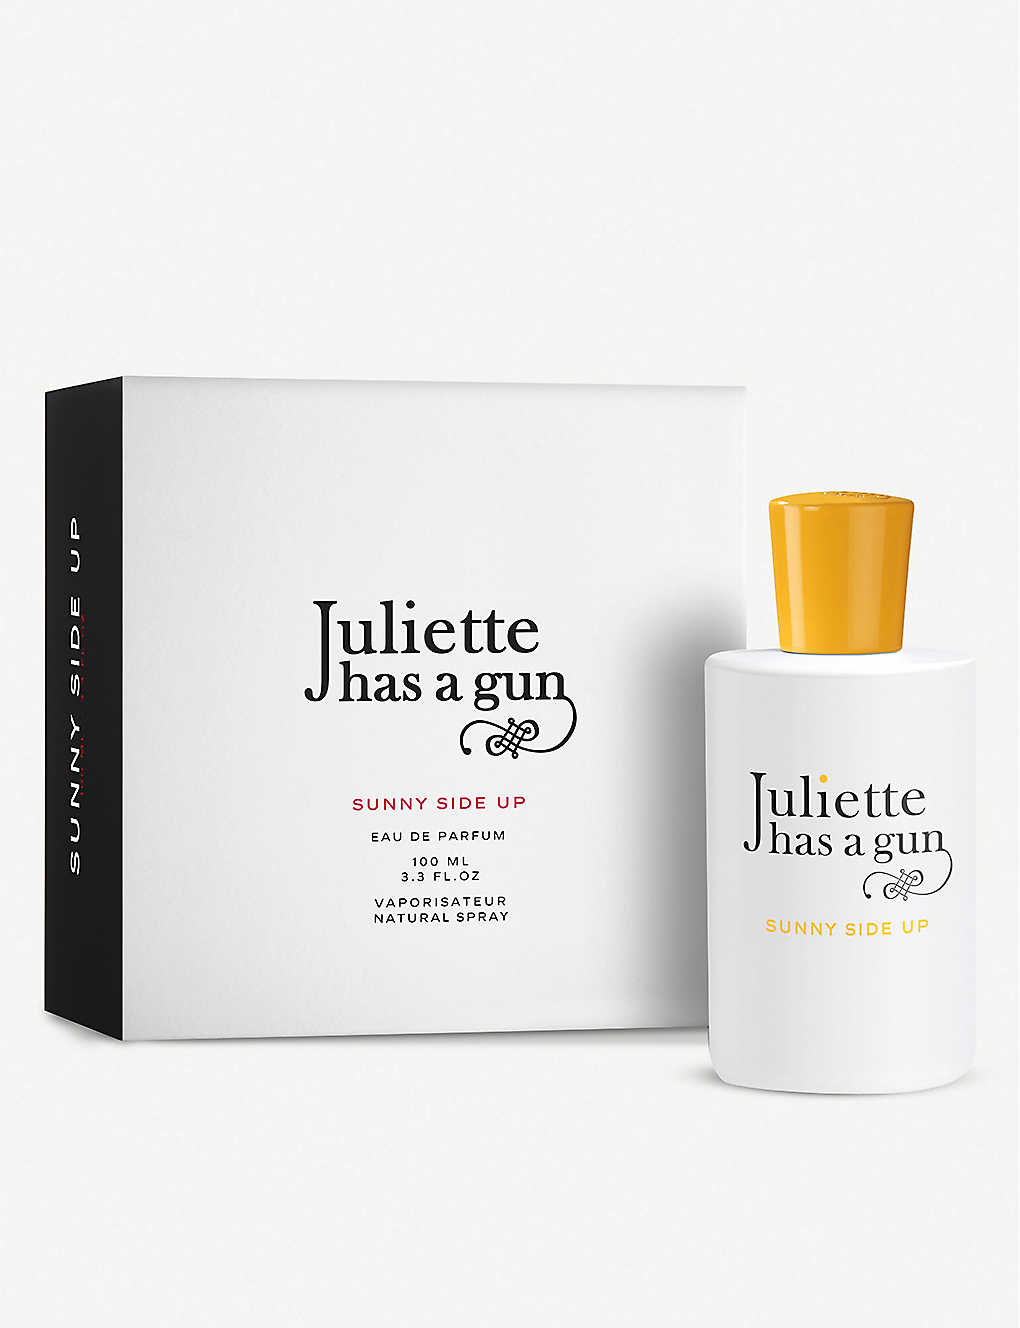 Juliette Has A Gun Sunny Side Up Eau De Parfum